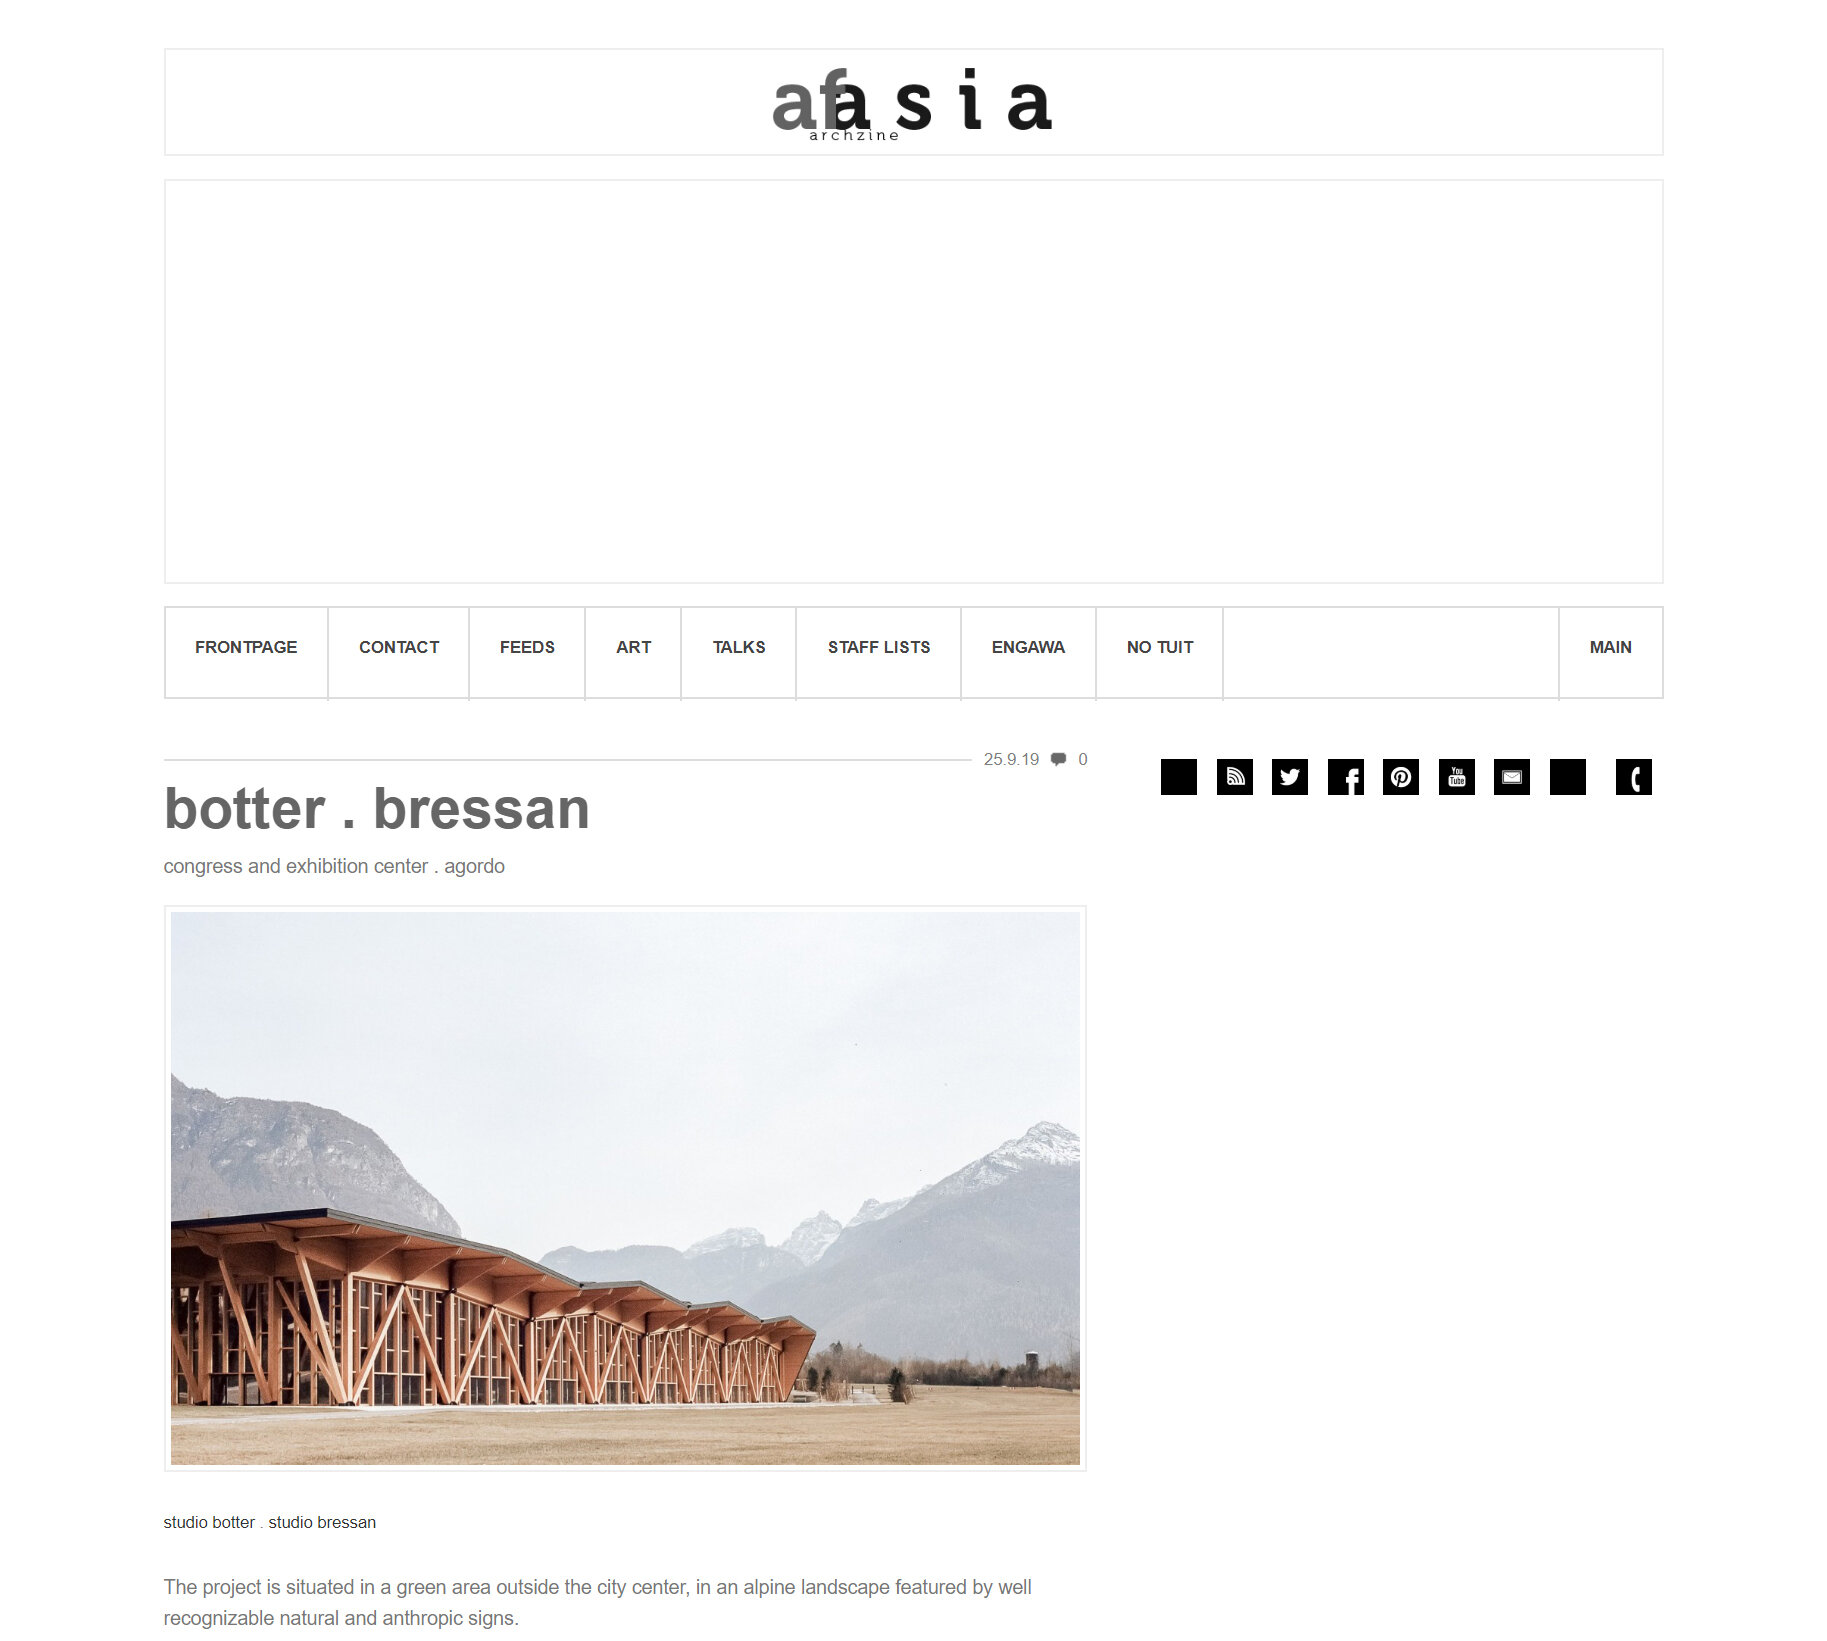 7A afasiaarchzine - Botter Bressan.jpg